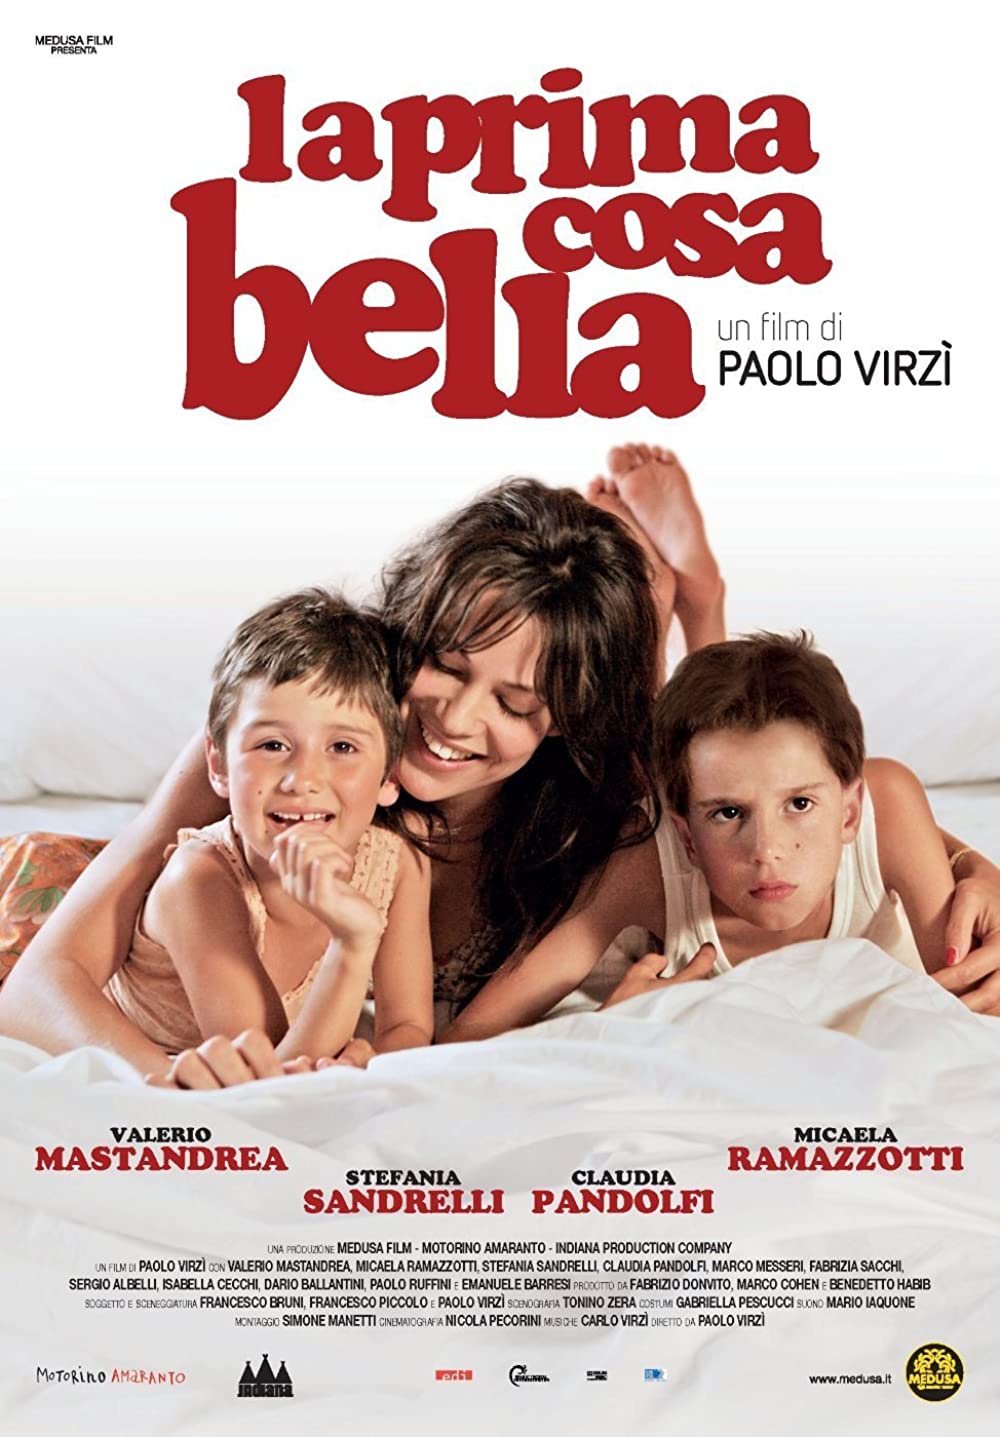 Filmbeschreibung zu La prima cosa bella